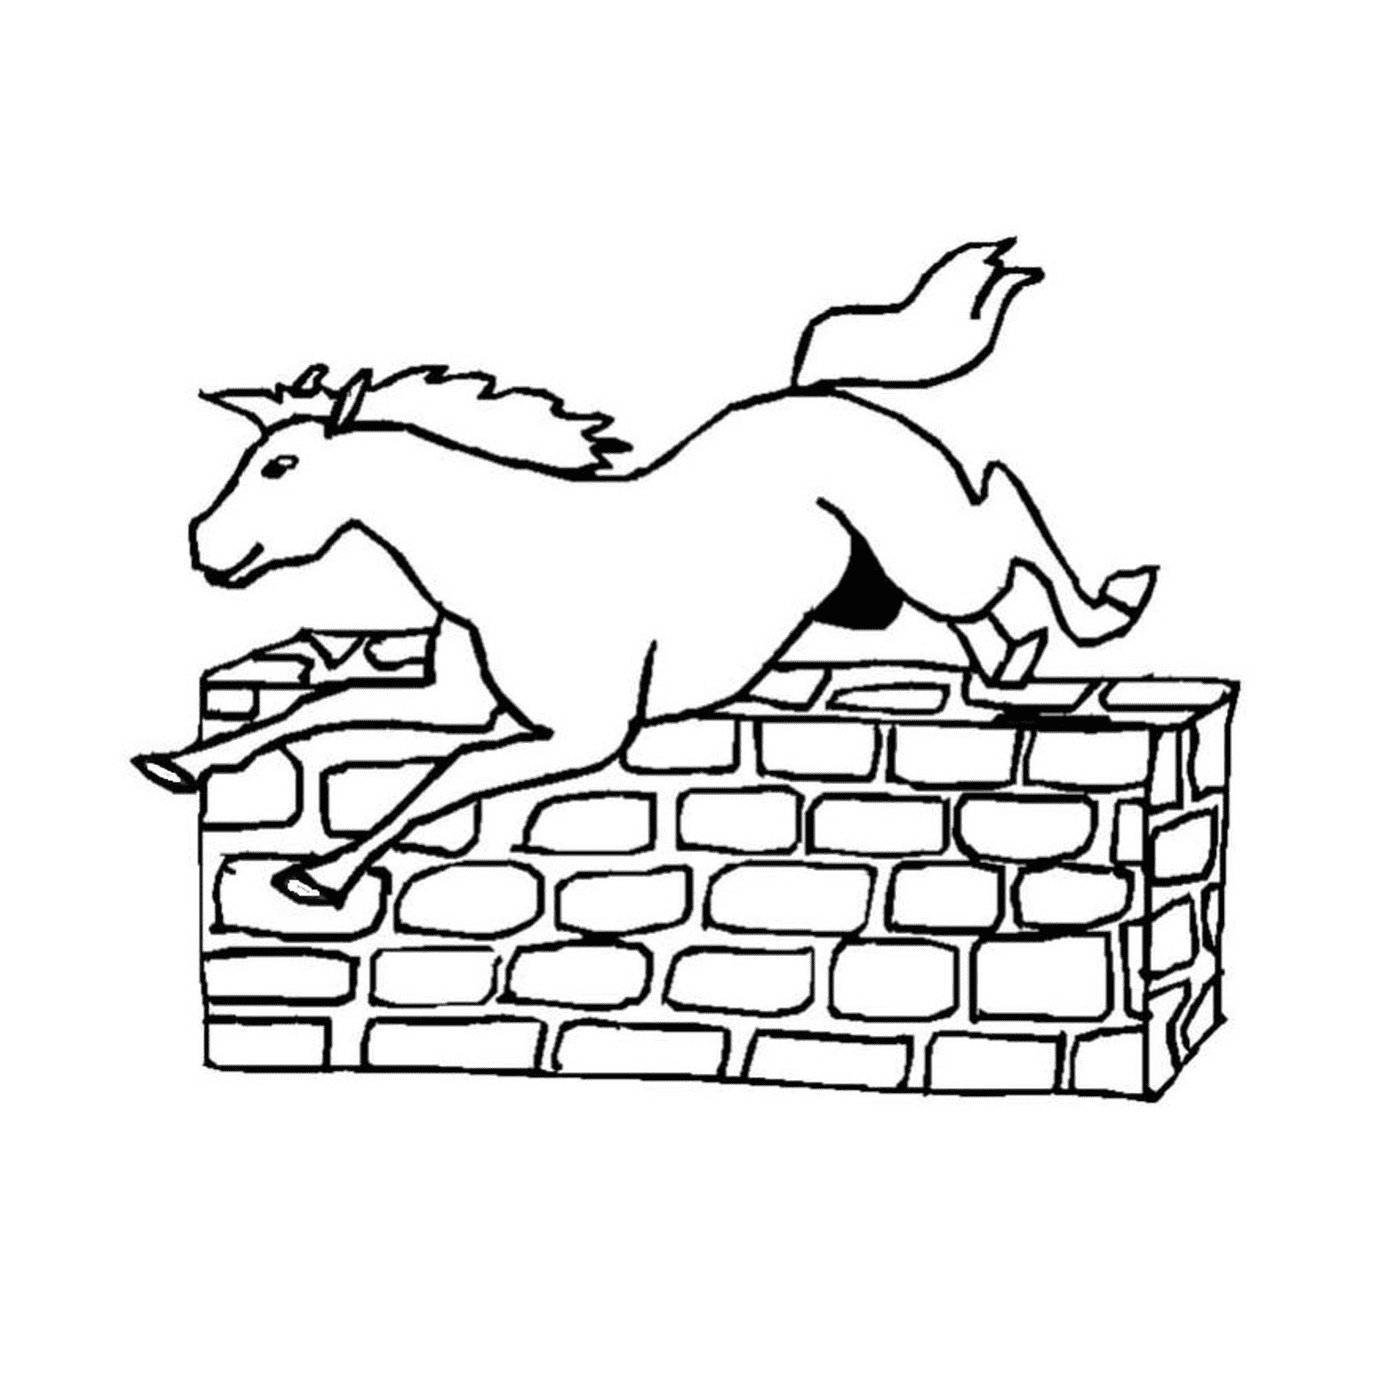  Audace saltare cavallo sopra un muro 